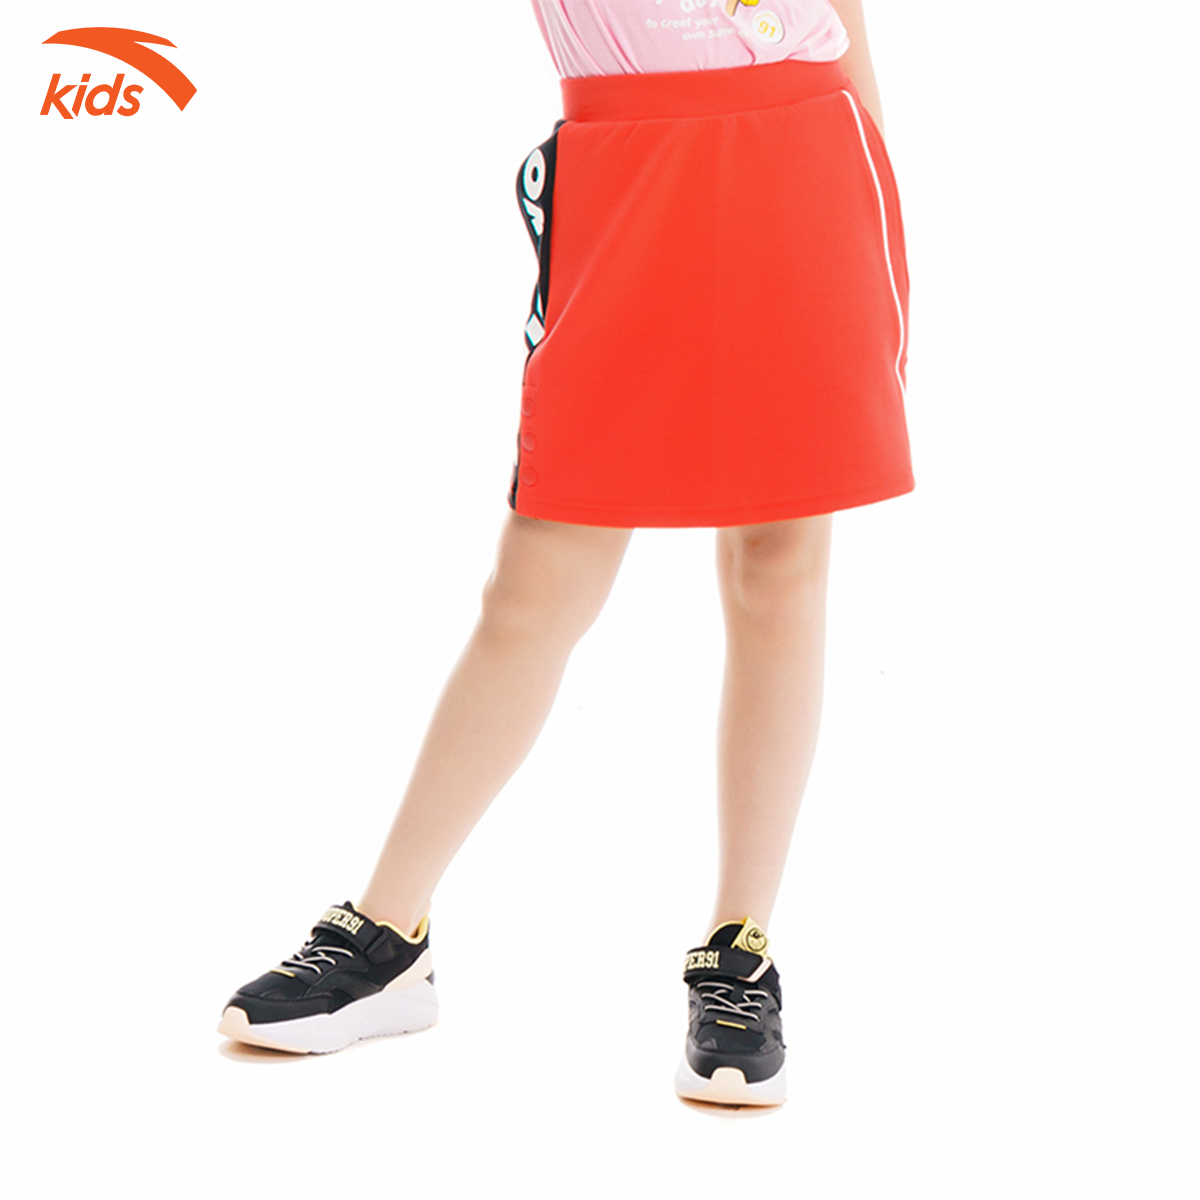 Chân váy ngắn bé gái Anta Kids 362017394-1, kiểu dáng thể thao, chất liệu mềm mịn